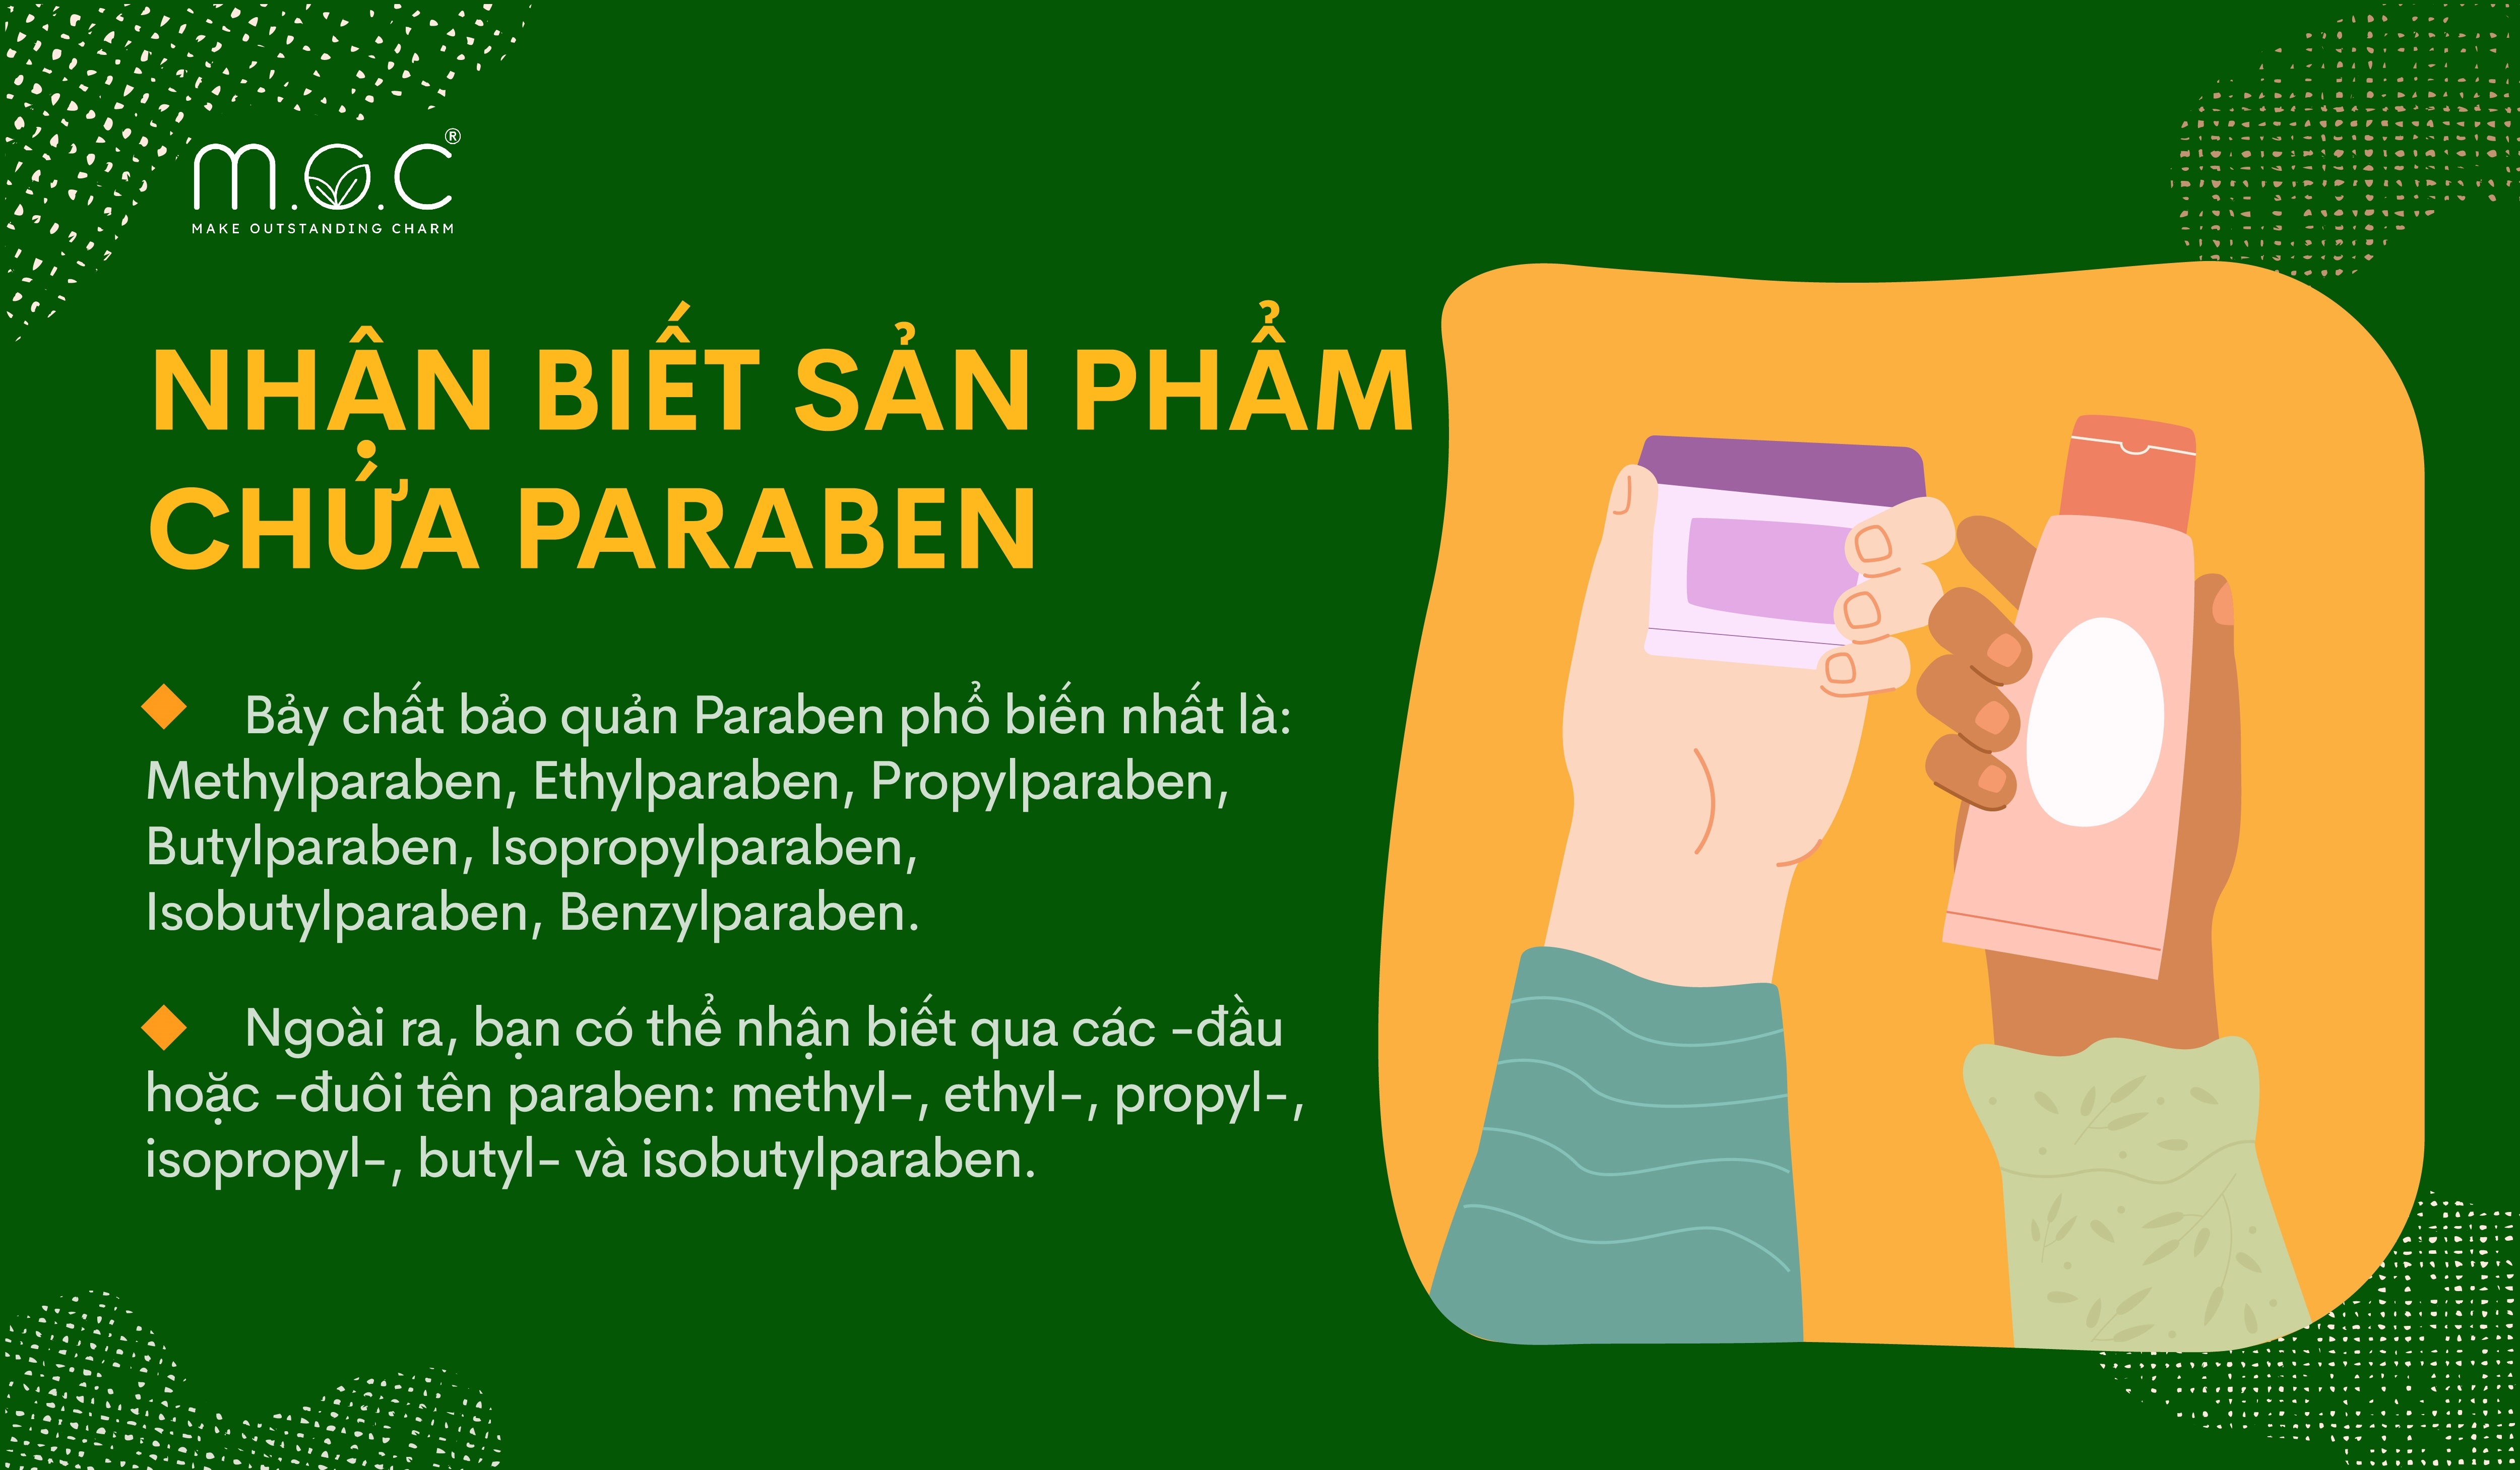 nhan-biet-san-pham-chua-paraben